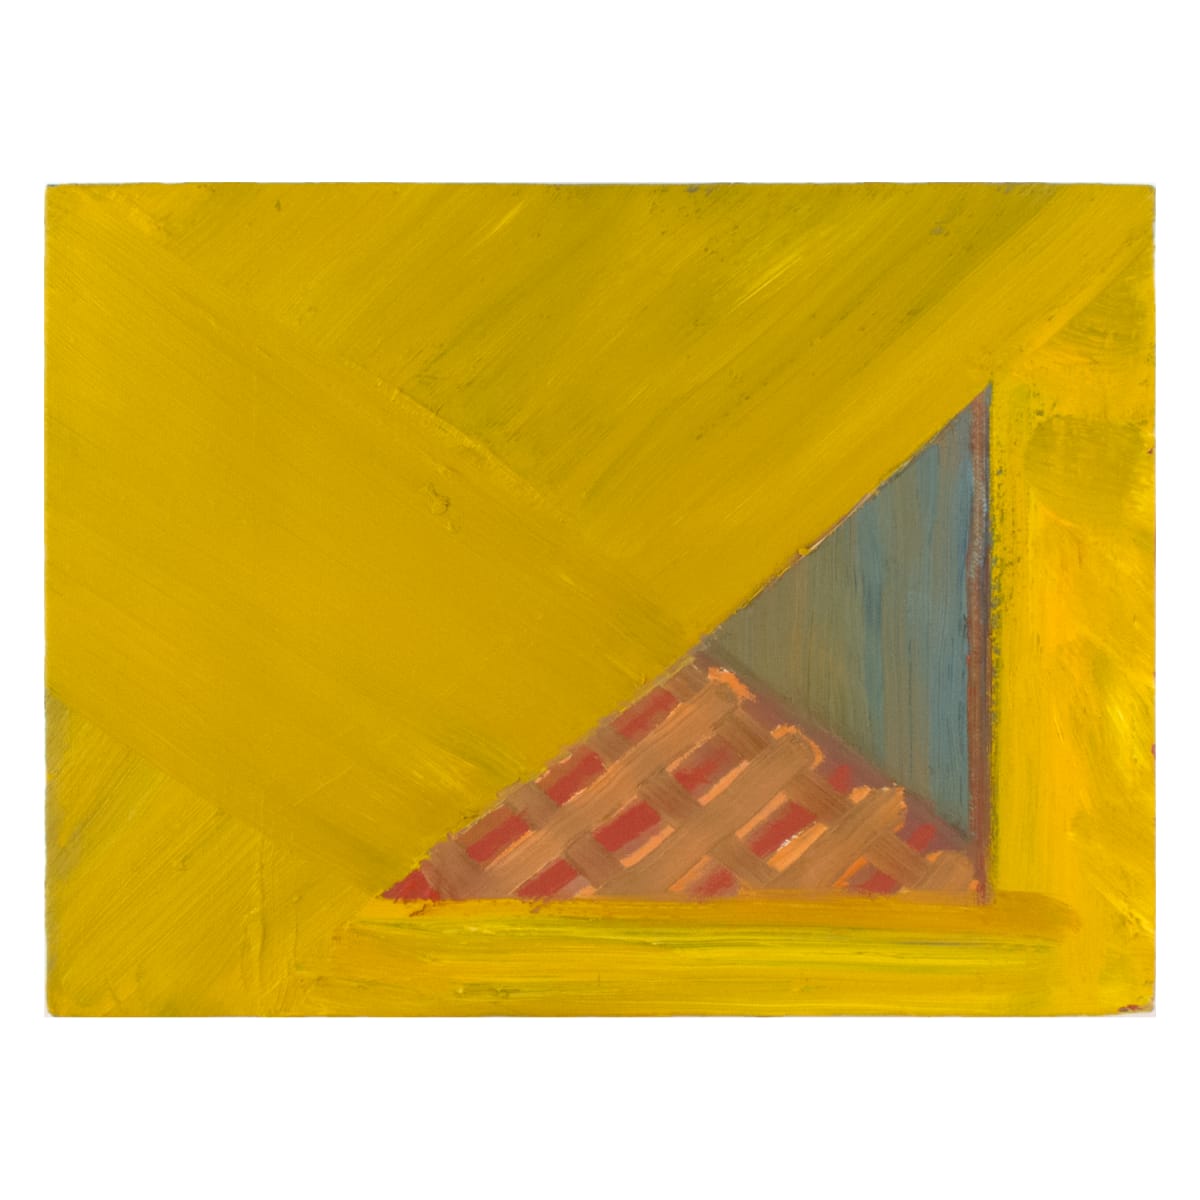 Eccentric 17: Triangle by Bruce Price  Image: Eccentric 17: Triangle
acrylic & oil on canvas
9"x12"